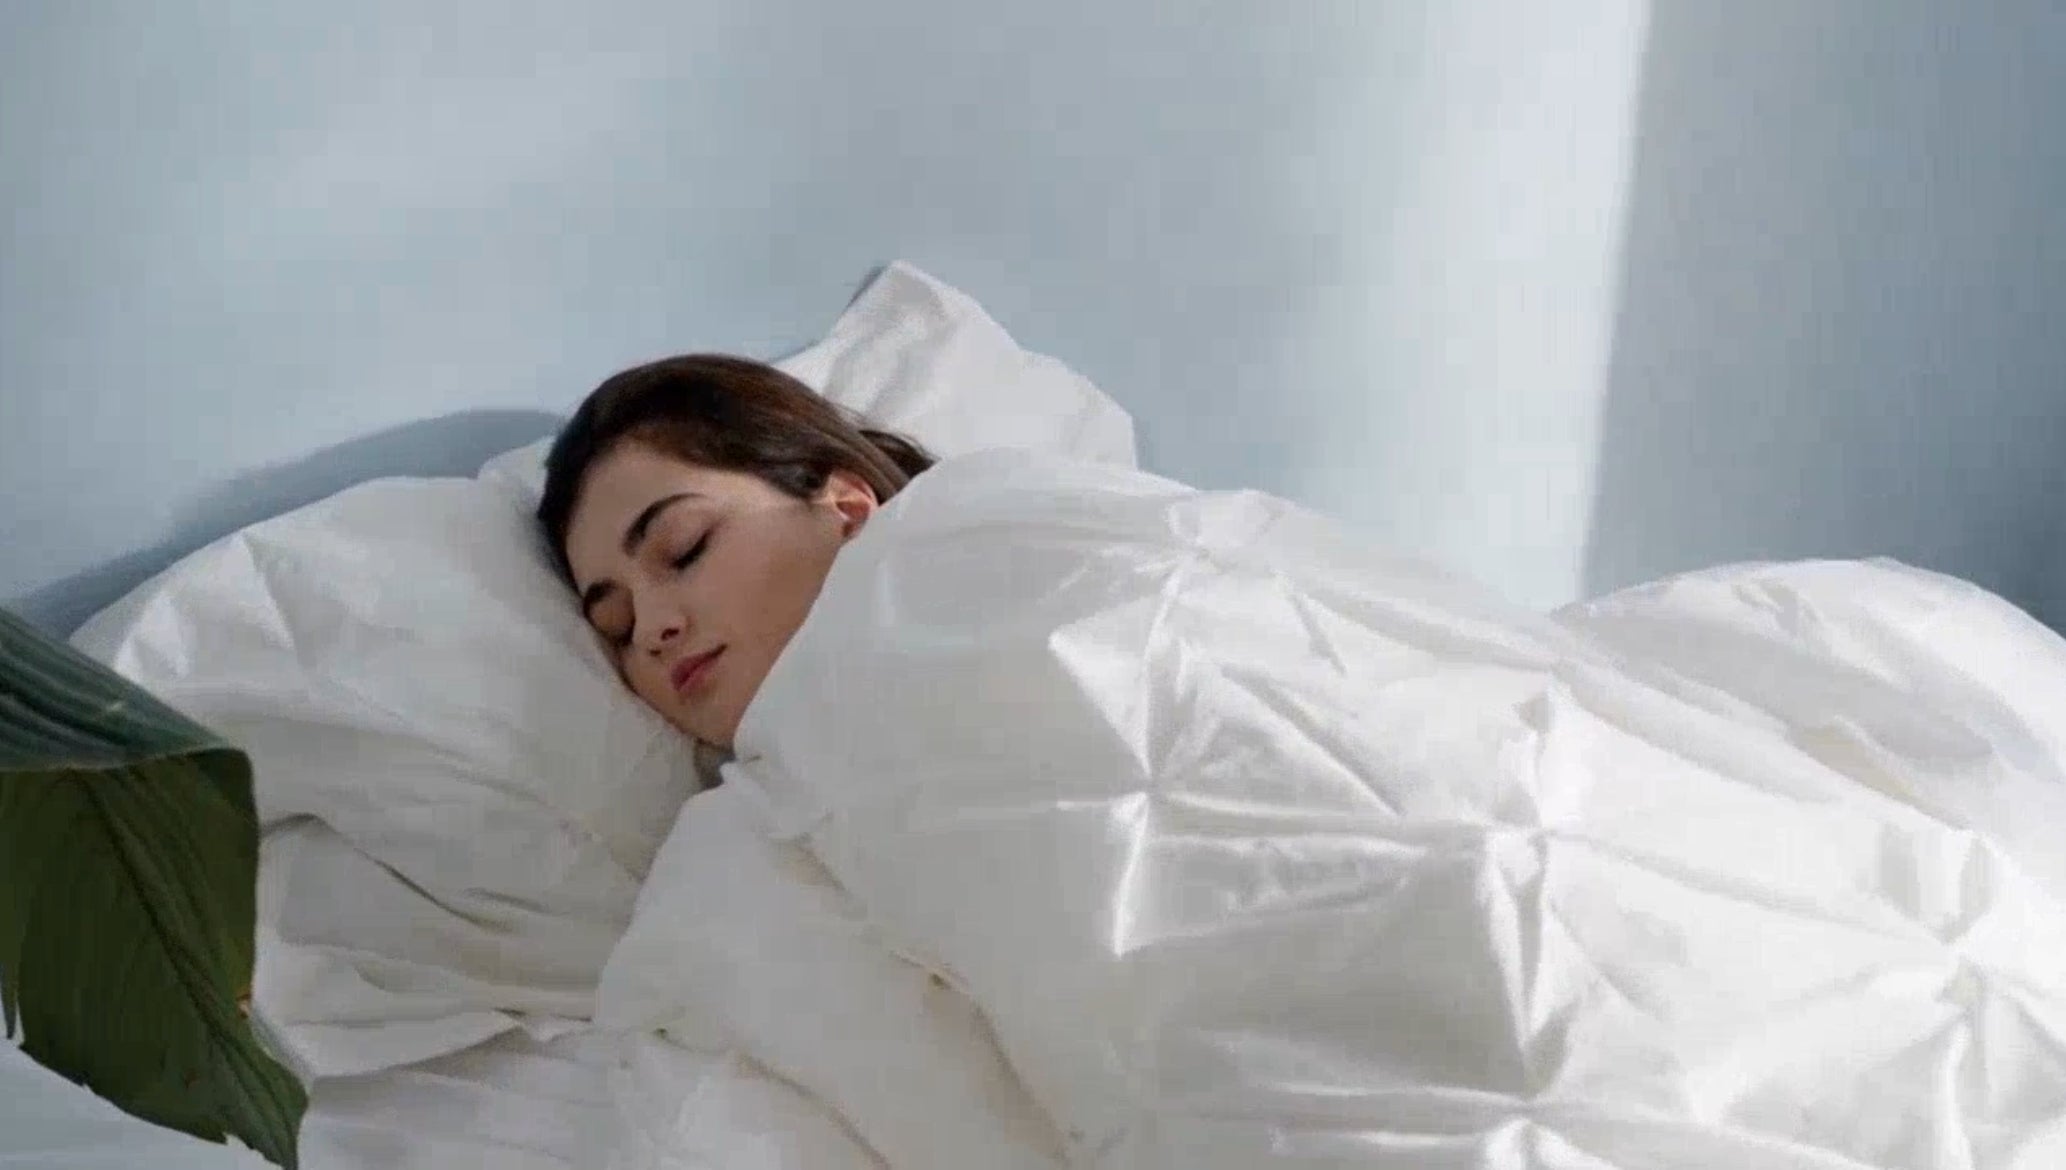 Entspannen Sie sich in luxuriösem Komfort mit der Prestige Schurwolldecke – eine nachhaltige Wohlfühloase für Ihren Schlaf